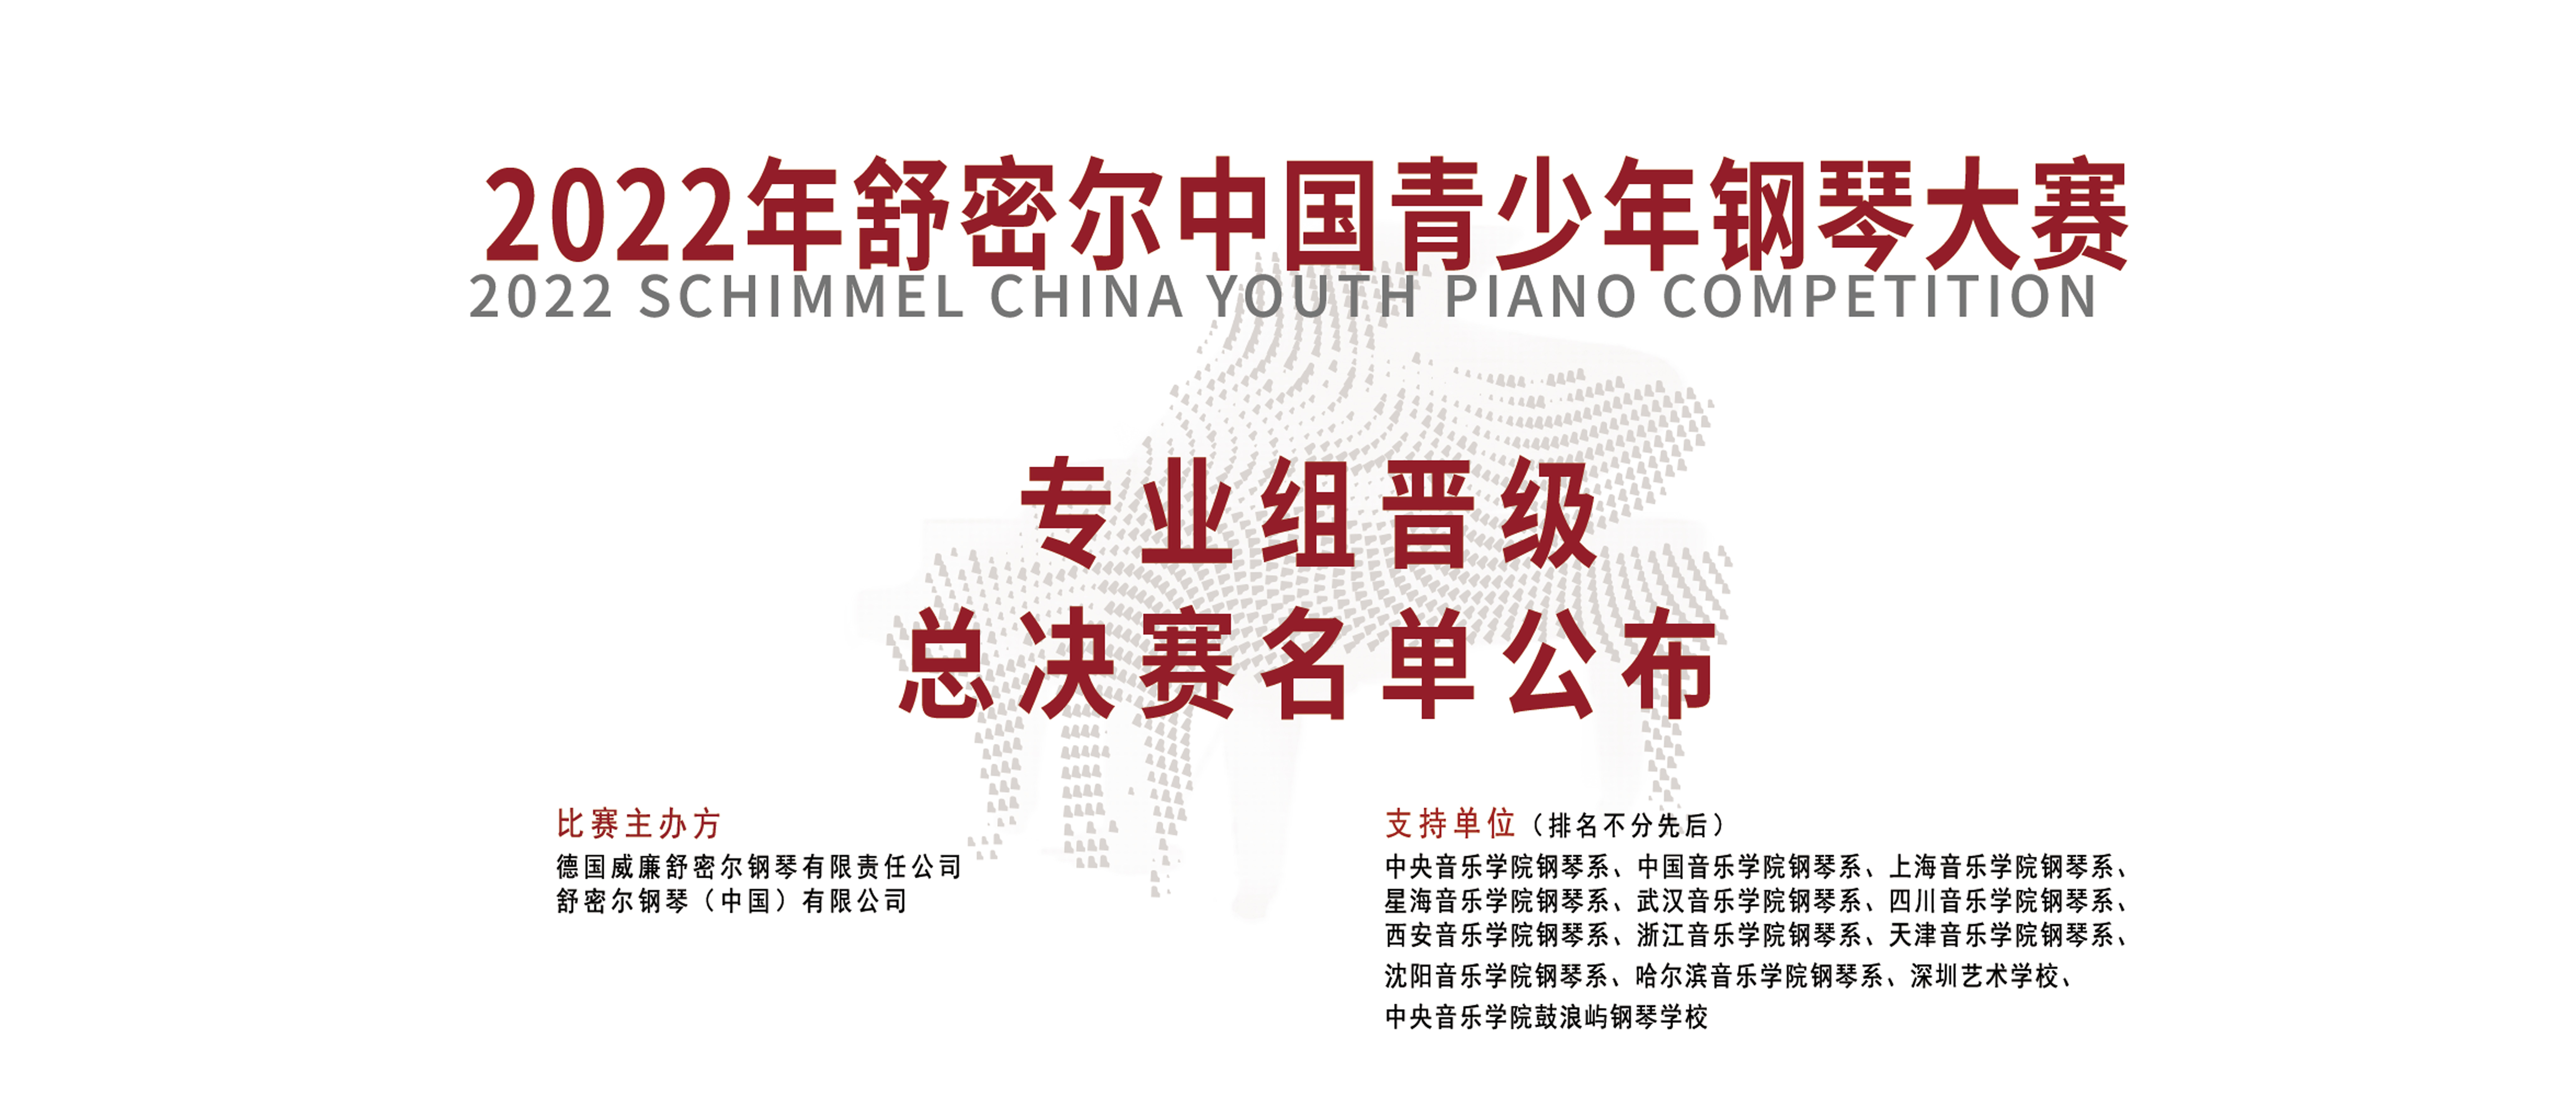 2022年舒密尔中国青少年钢琴大赛专业组晋级总决赛名单